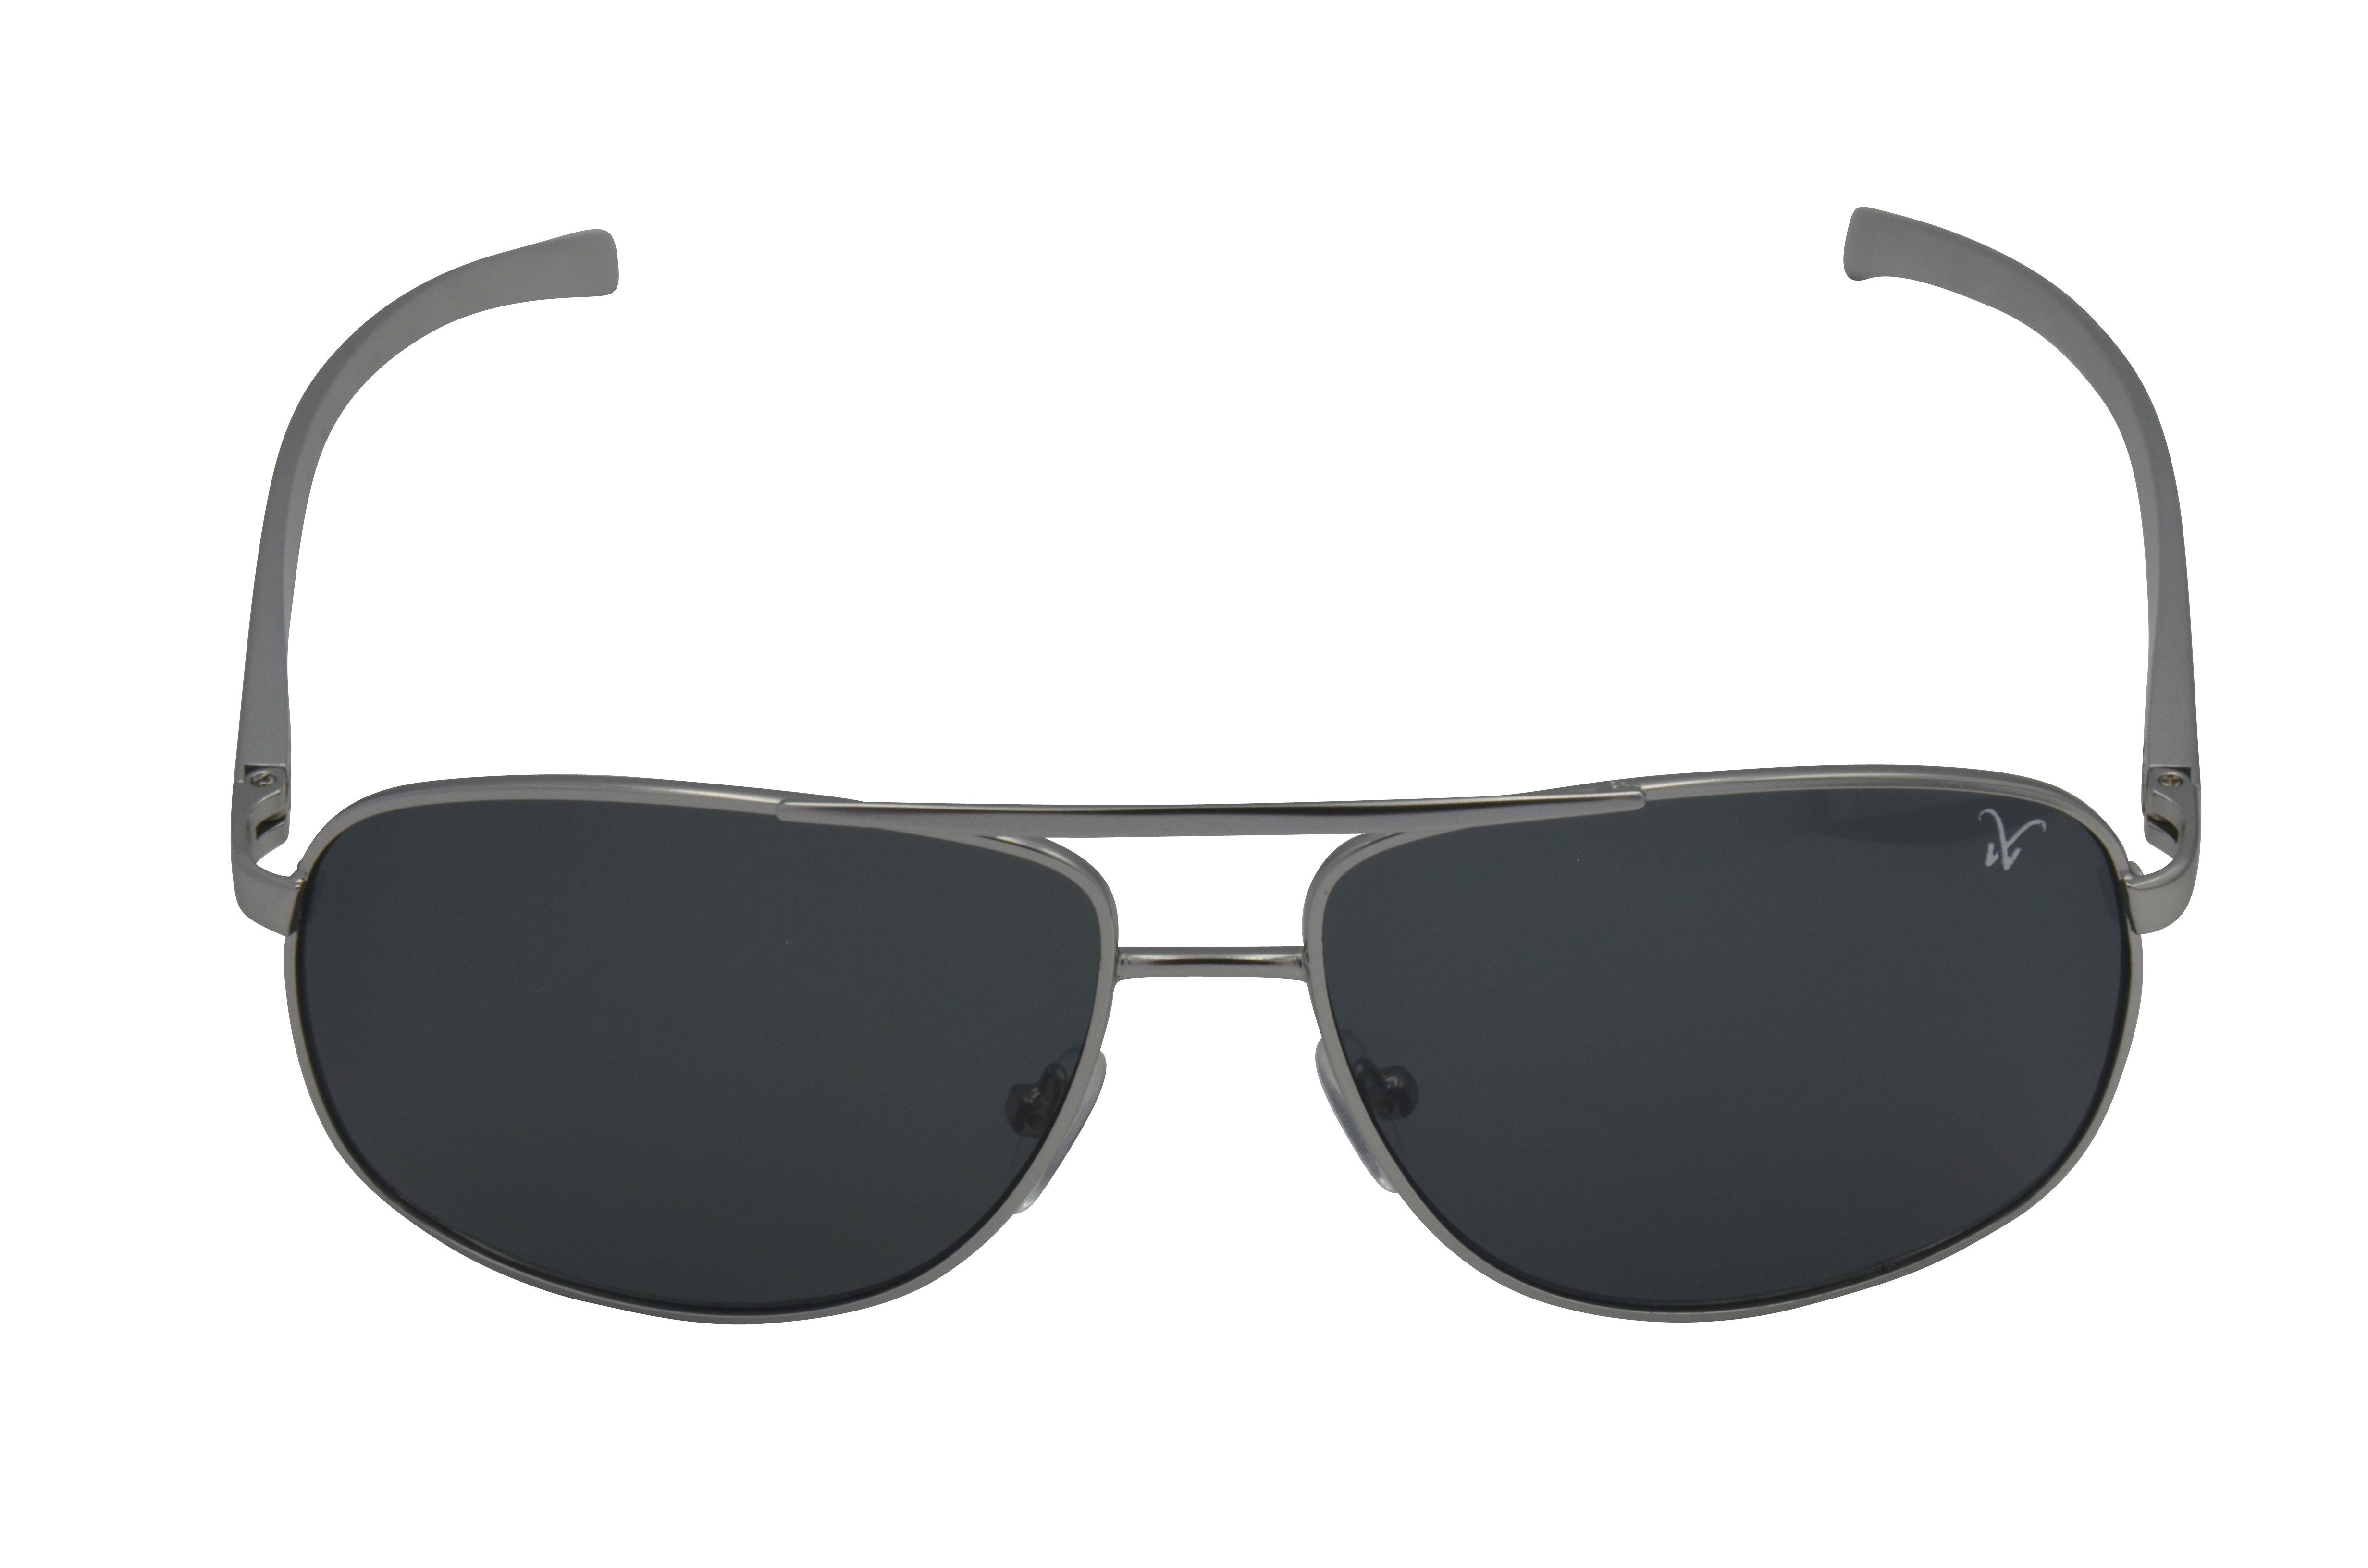 Gamswild Sonnenbrille WM1322 GAMSSTYLE Pilotenbrille Damen Unisex, silber-grau, grau-grün blau-gold, Herren Brille Mode